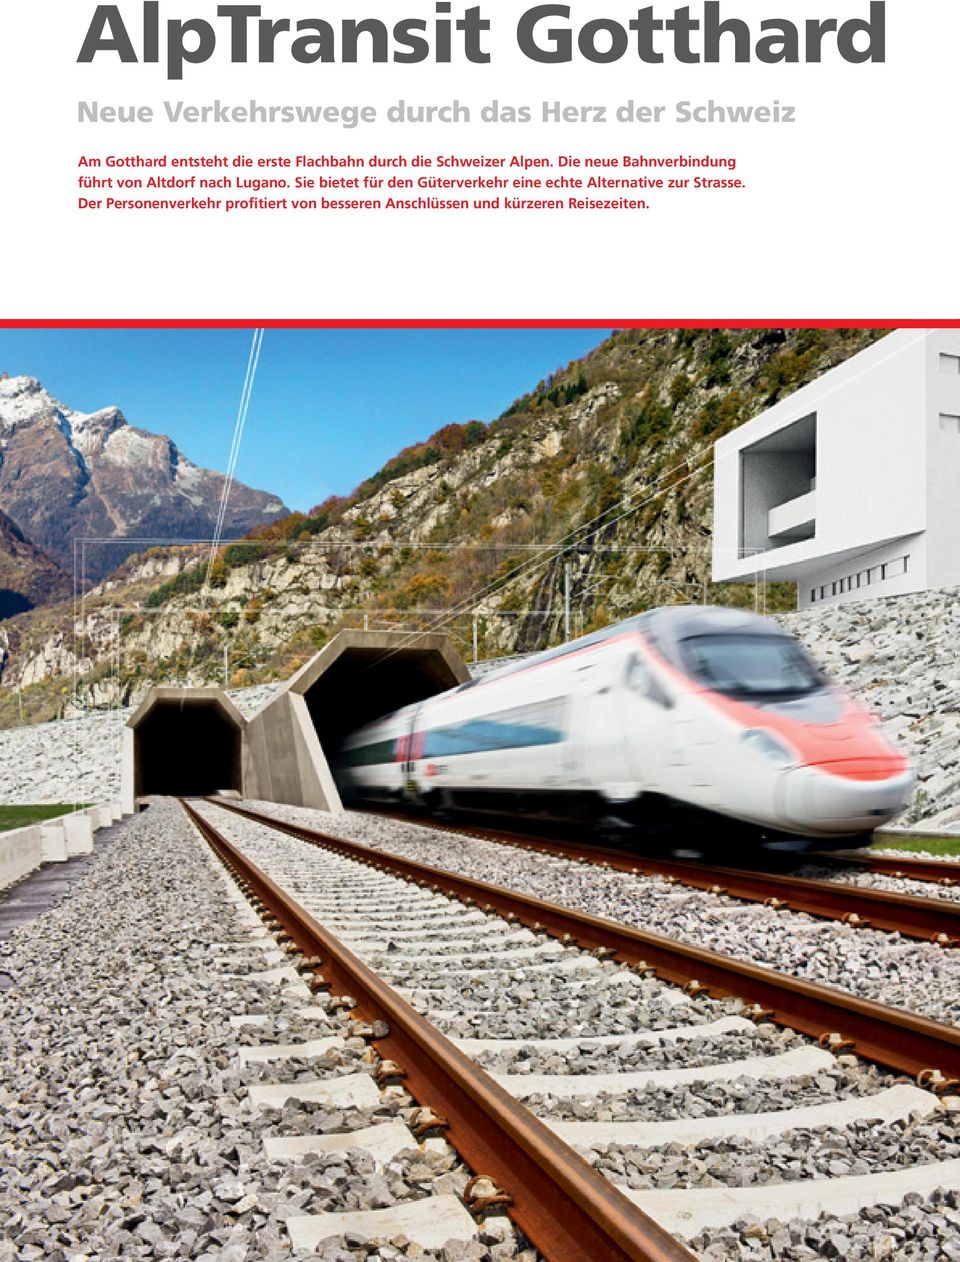 Die neue Bahnverbindung führt von Altdorf nach Lugano.